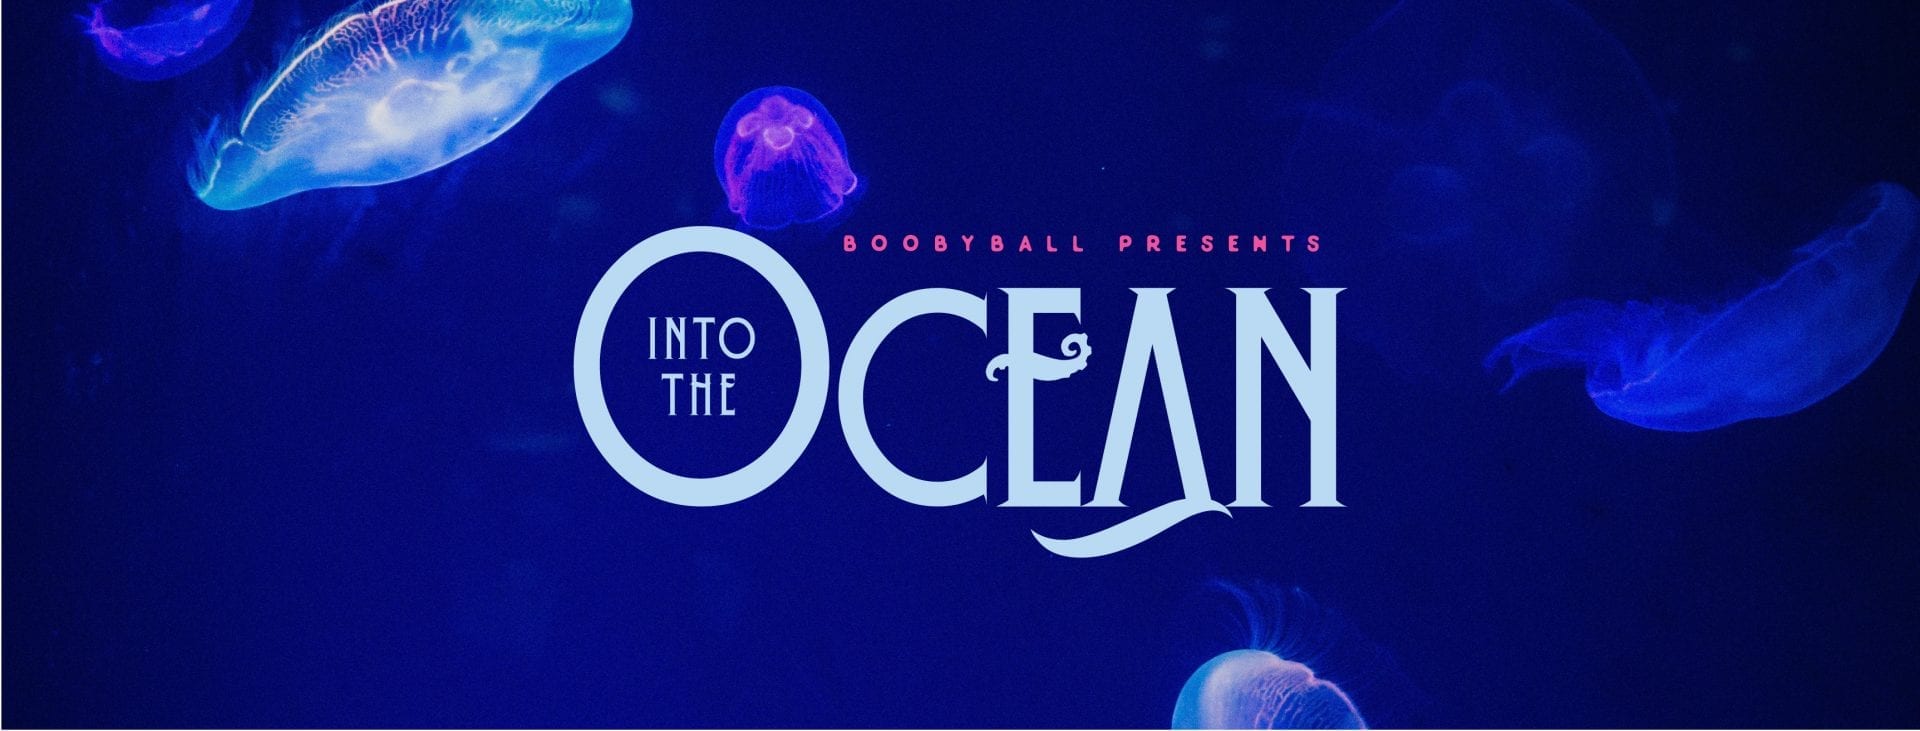 Boobyball 2019 Into The Ocean